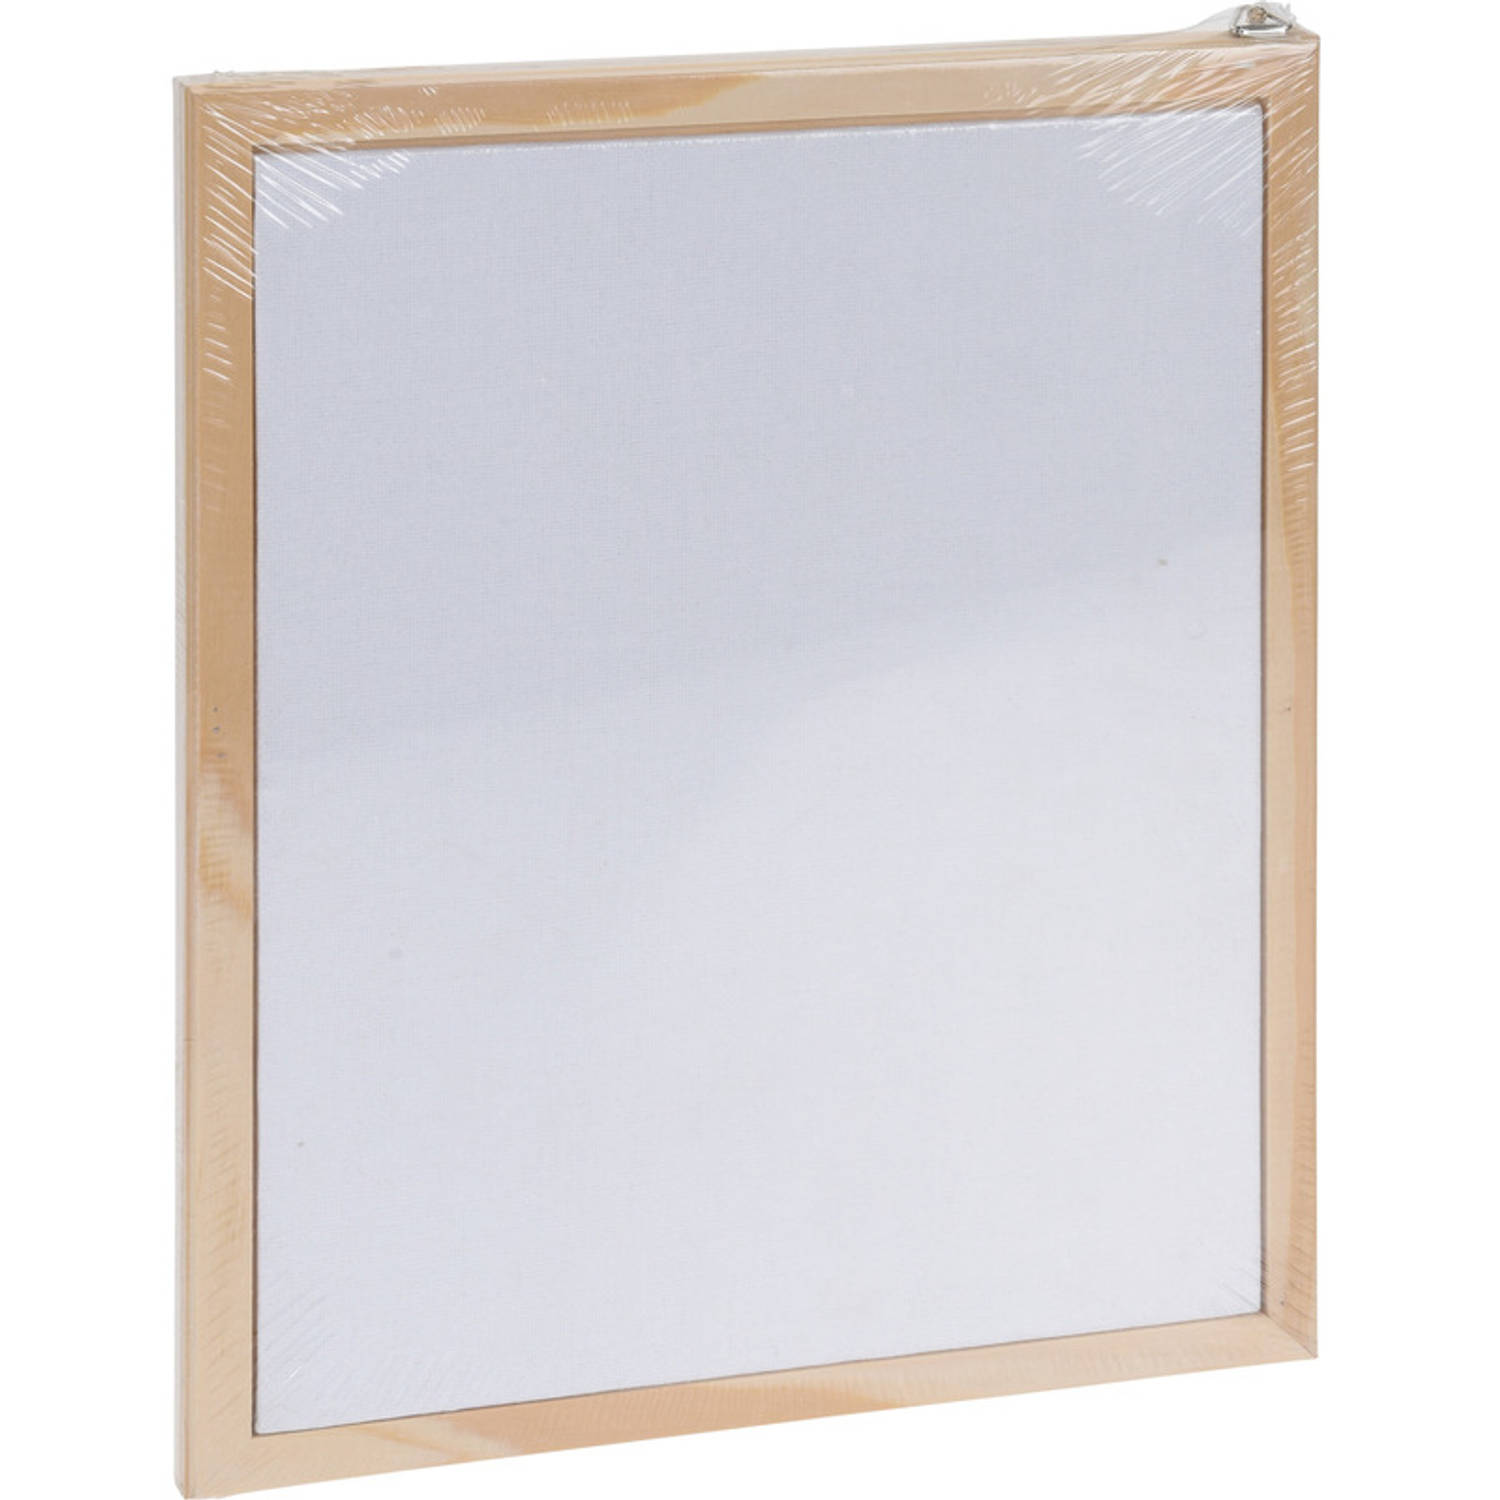 1x Canvas/schildersdoeken 24x30 cm houten lijst hobbymateriaal - Schildersdoeken | Blokker